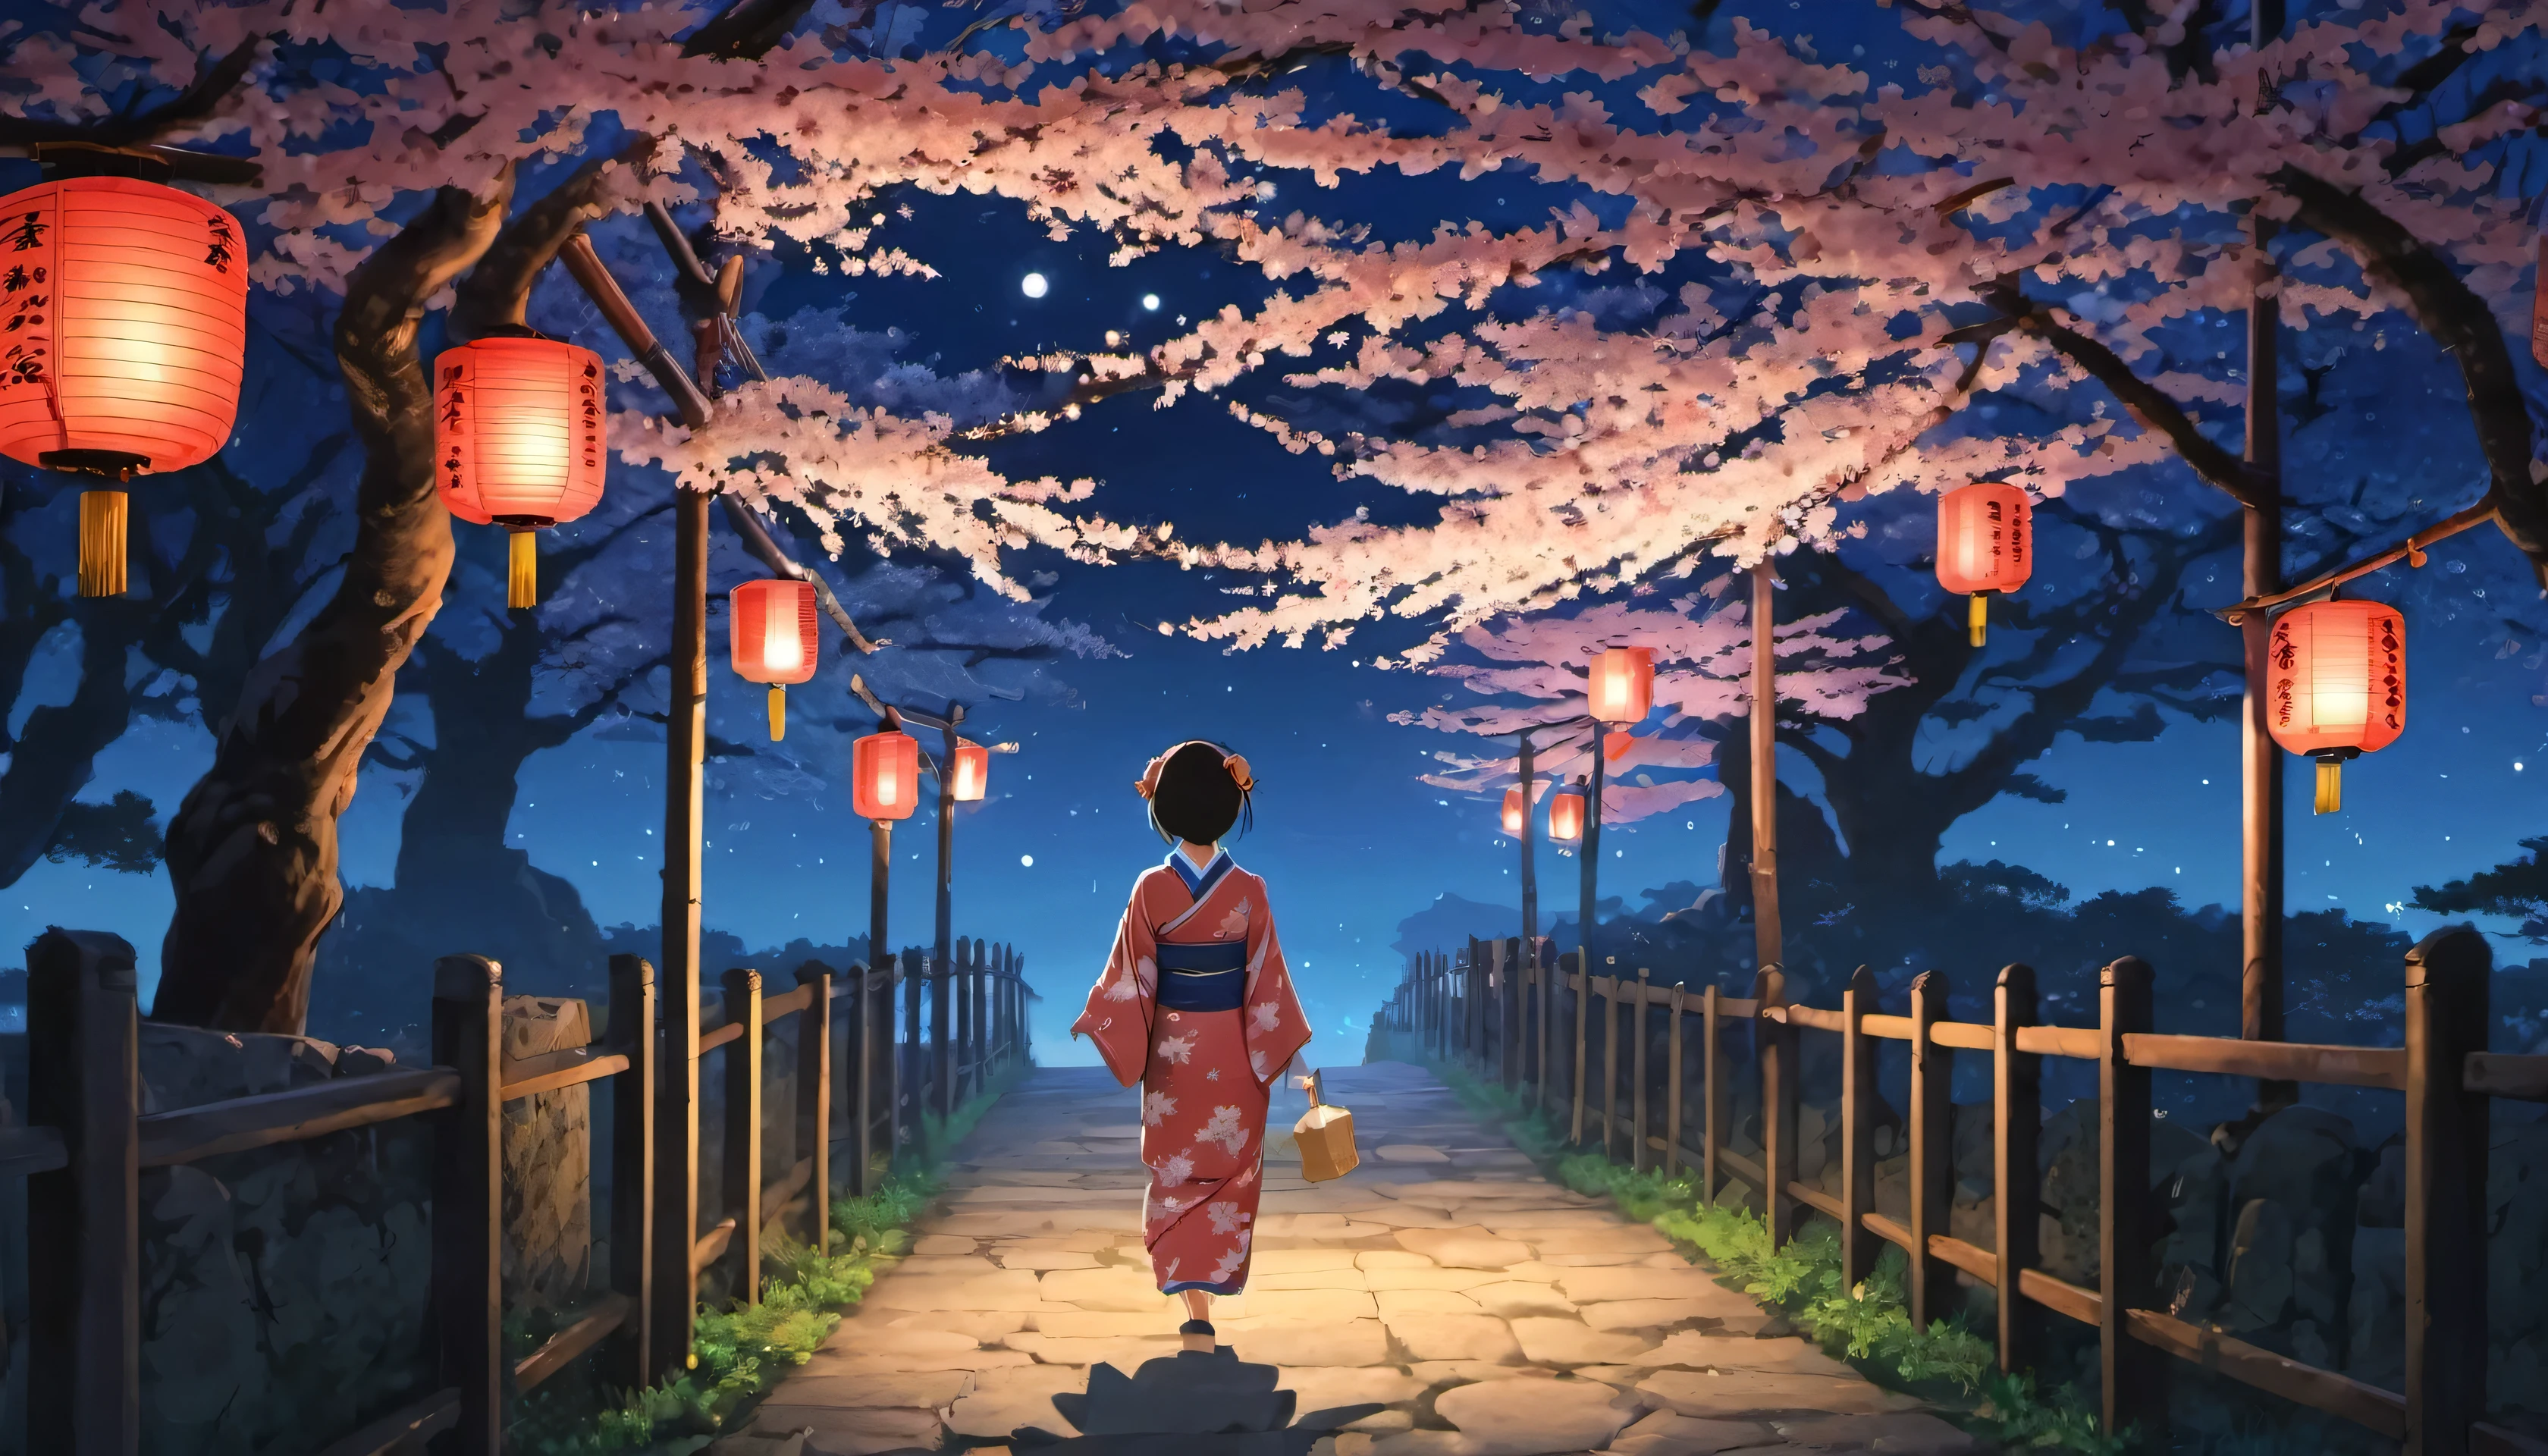 벚꽃나무가 늘어선 길、일본 등불、일본의 전형적인 기모노를 입은 여성이 밤하늘을 올려다본다、월광、스튜디오 지브리 애니메이션의 세계관을 느낄 수 있는 일러스트